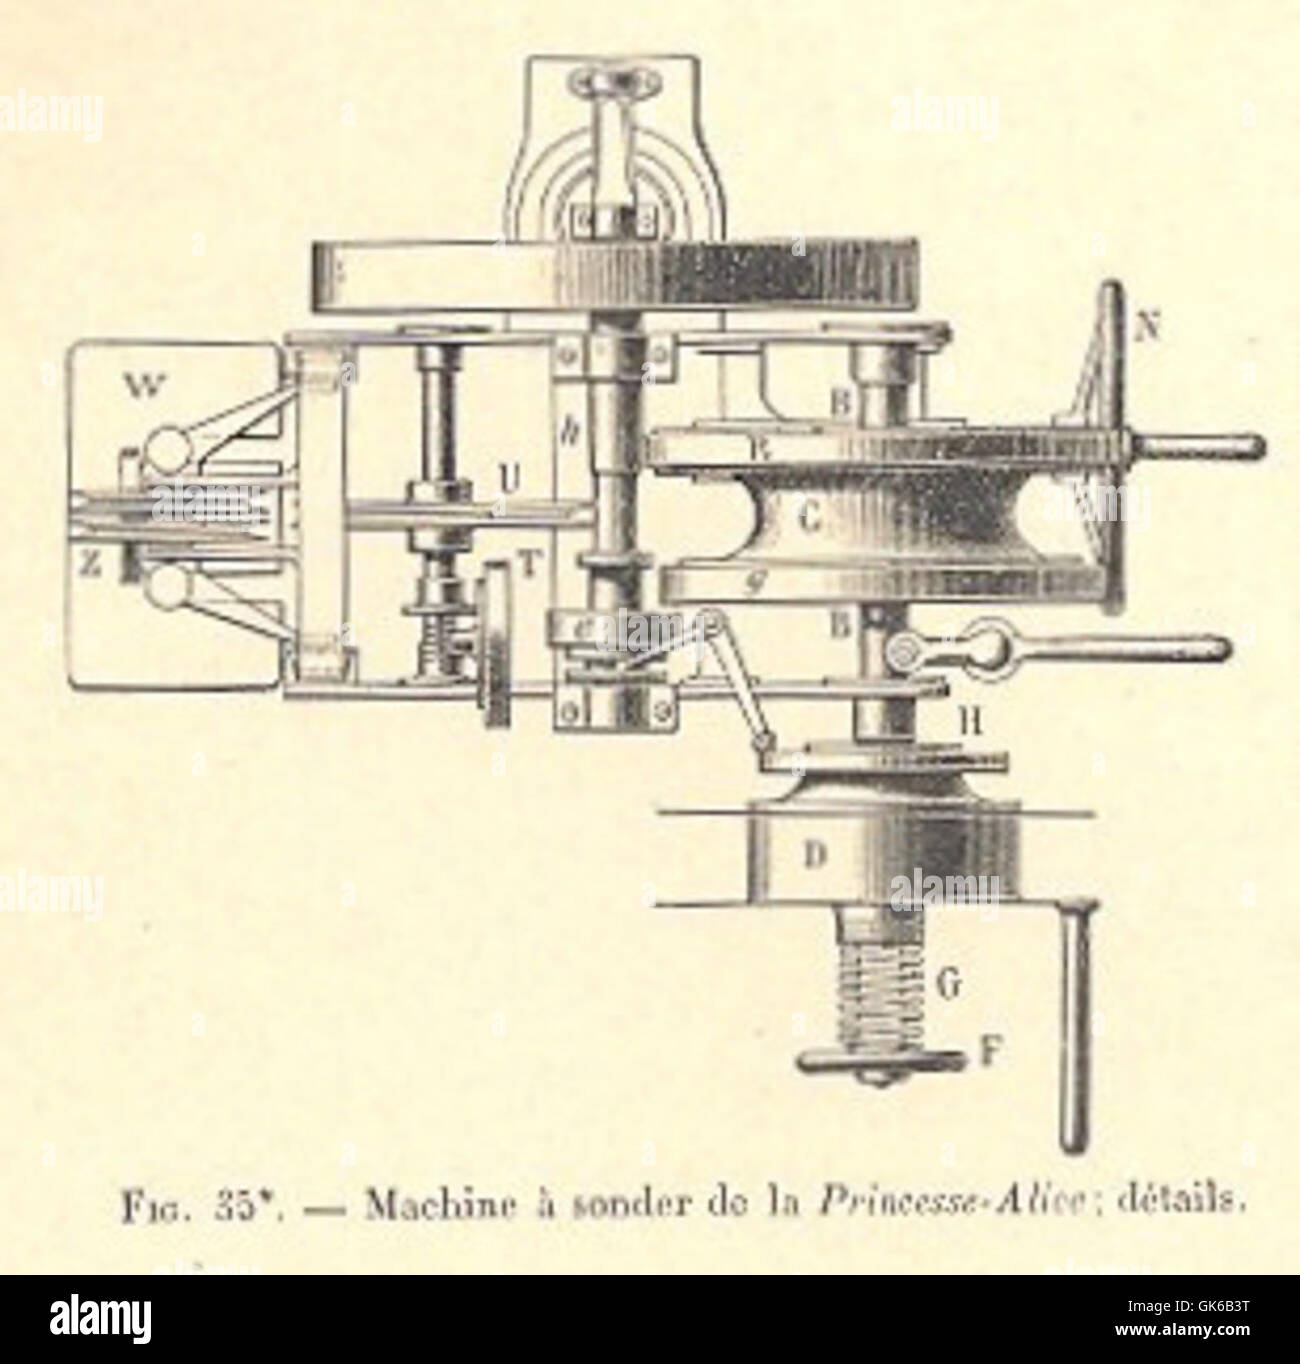 53140 Machine a sonder de la Princesse-Alice- details Stock Photo